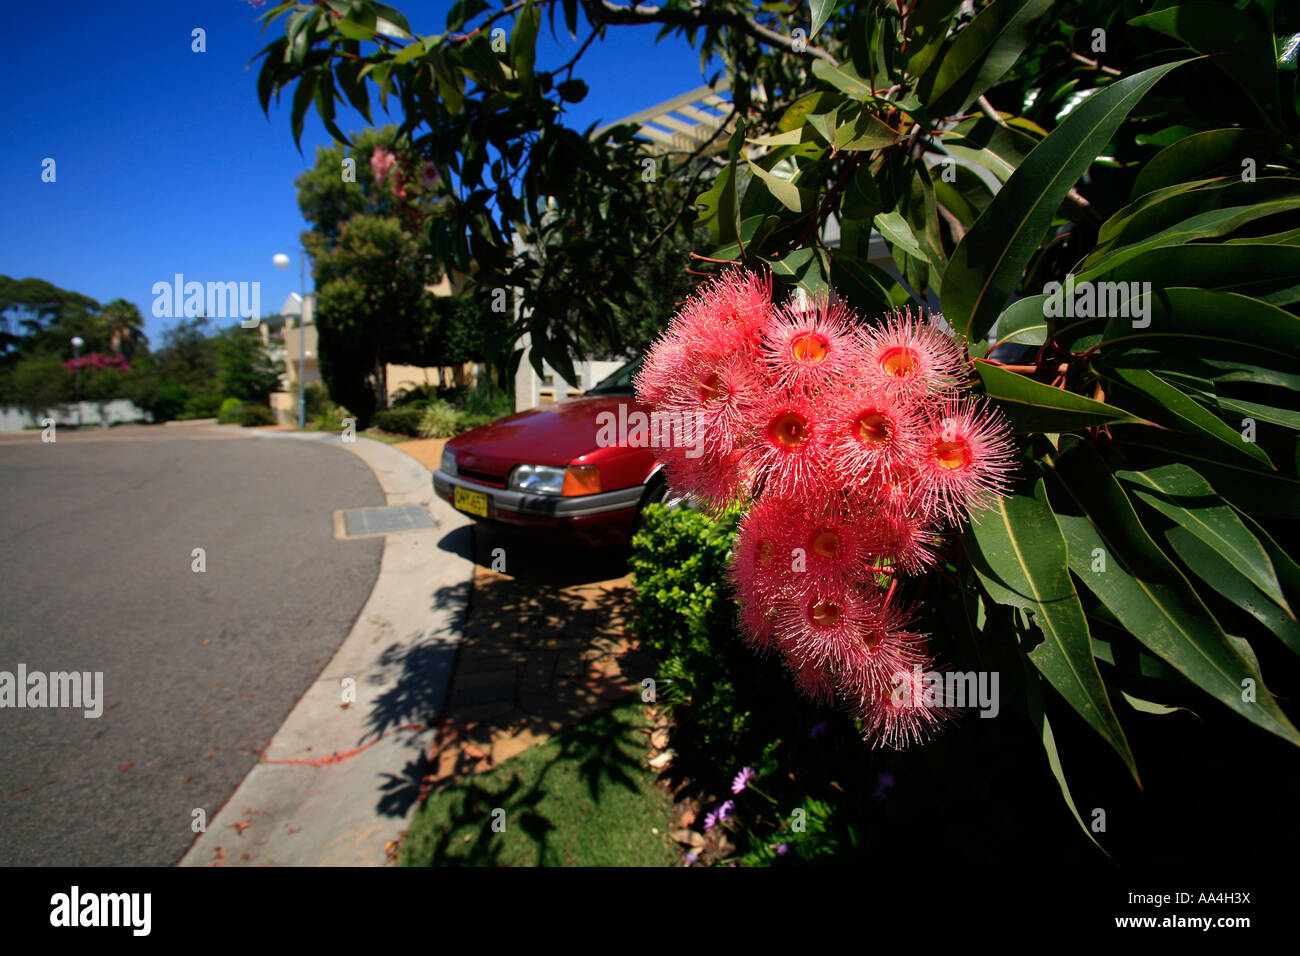 Une floraison rose gums sur la route dans une banlieue de Sydney Australie Banque D'Images